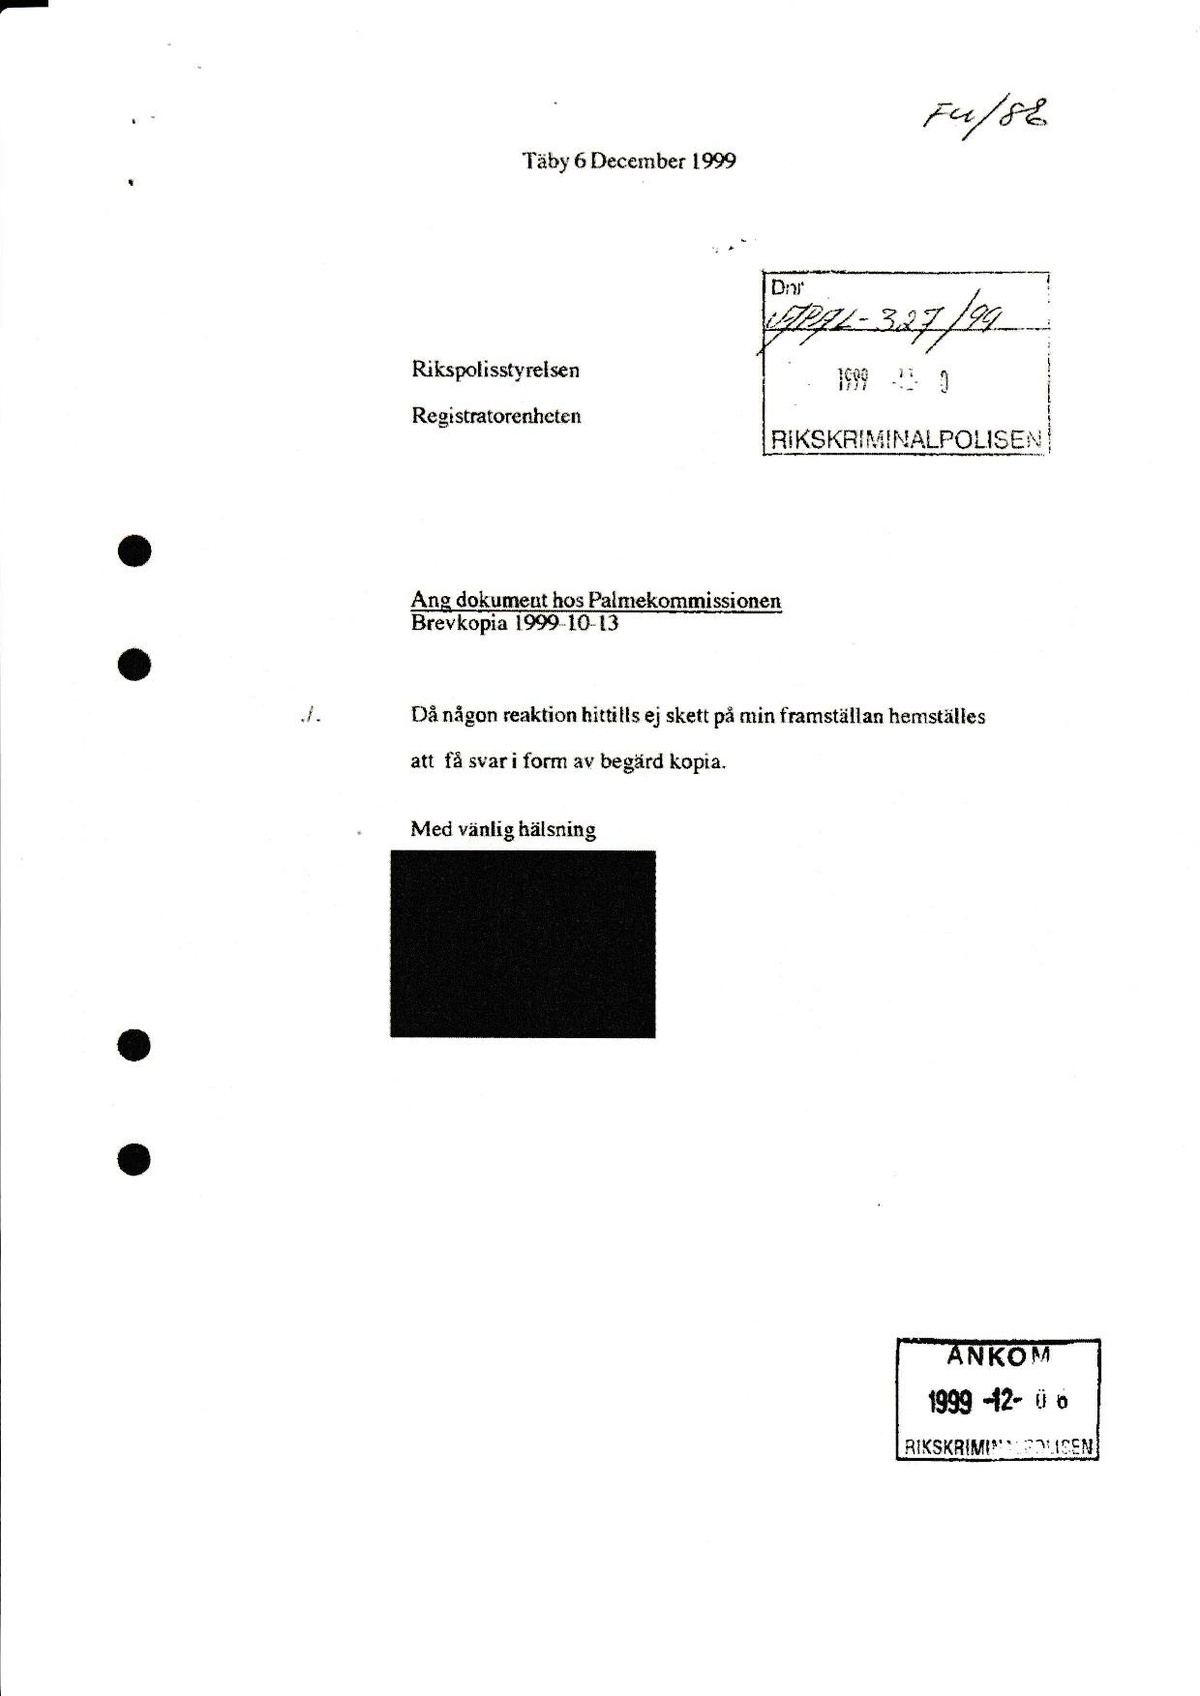 Pol-1999-10-13 E63-04 Brev från Okänd ang rapport från SE .pdf